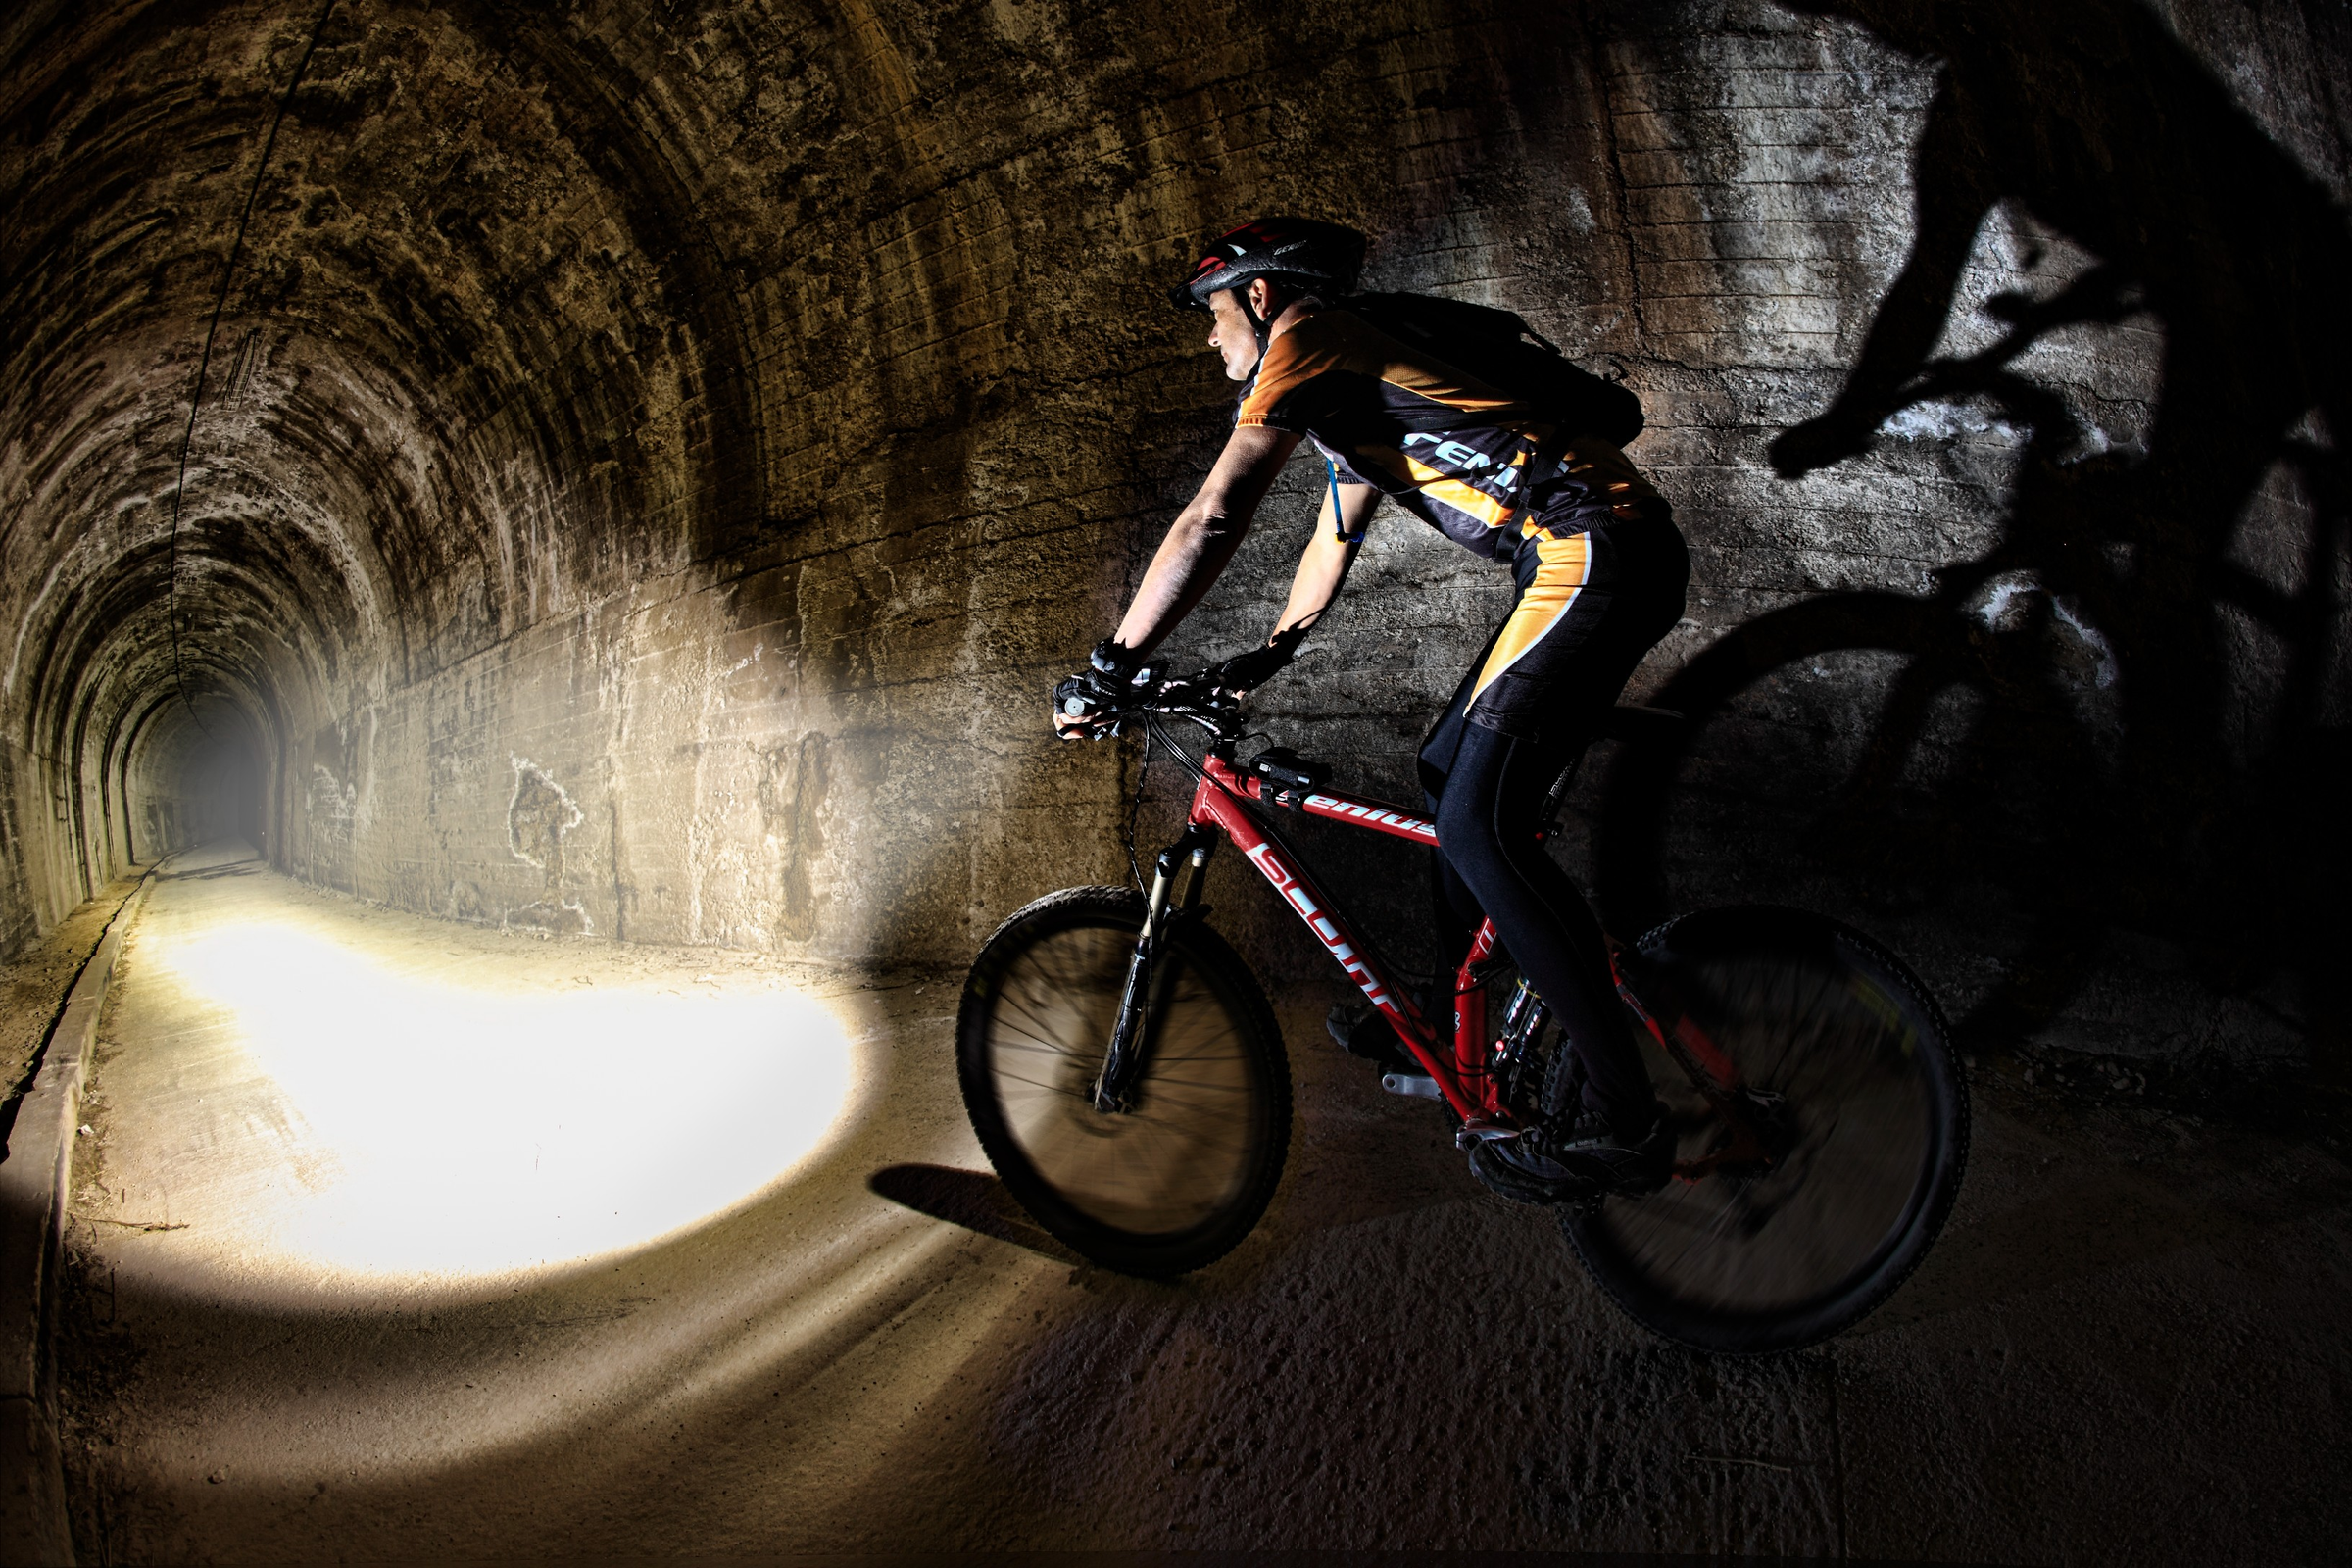 fenix bike light through a tunnel